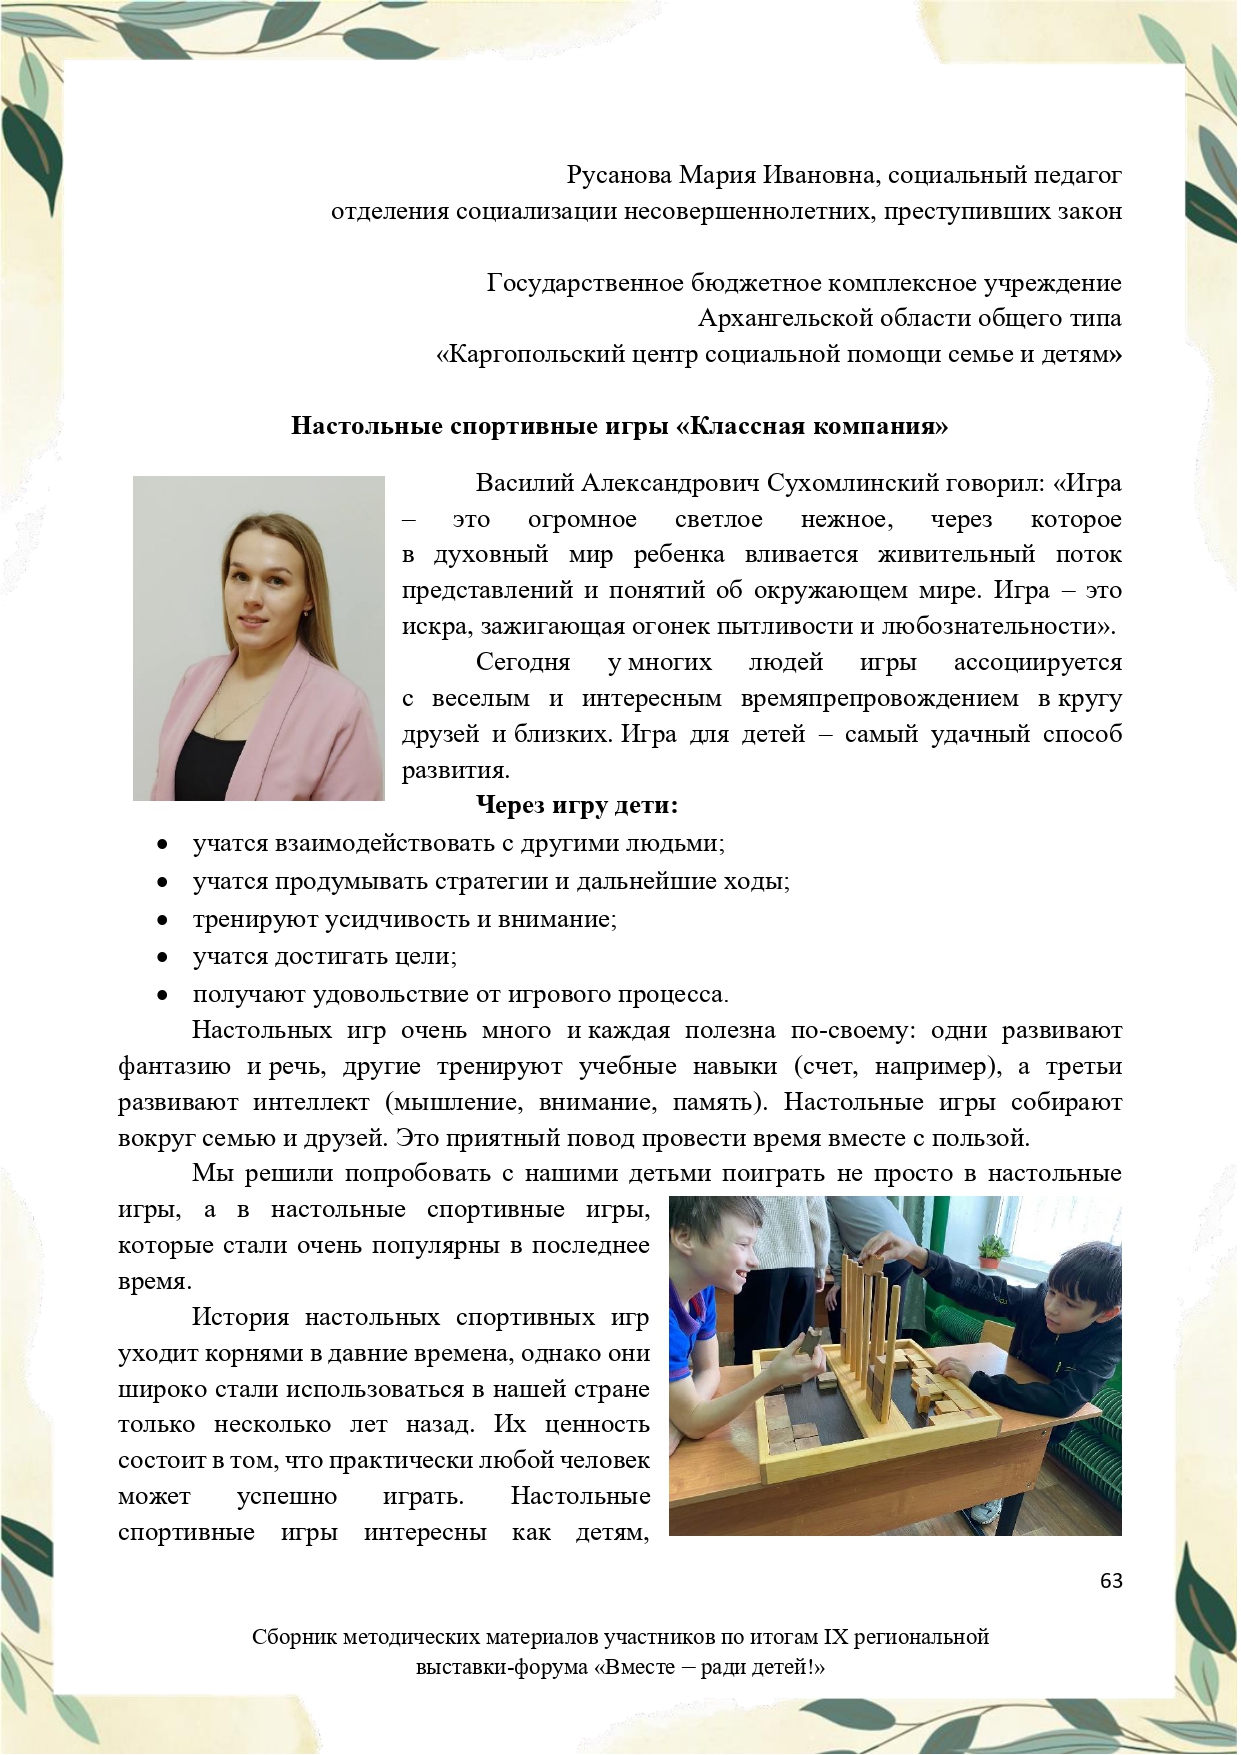 Sbornik_metodicheskikh_materialov_uchastnikov_IX_regionalnoy_vystavki-foruma_Vmeste__radi_detey_33__2023_page-0063